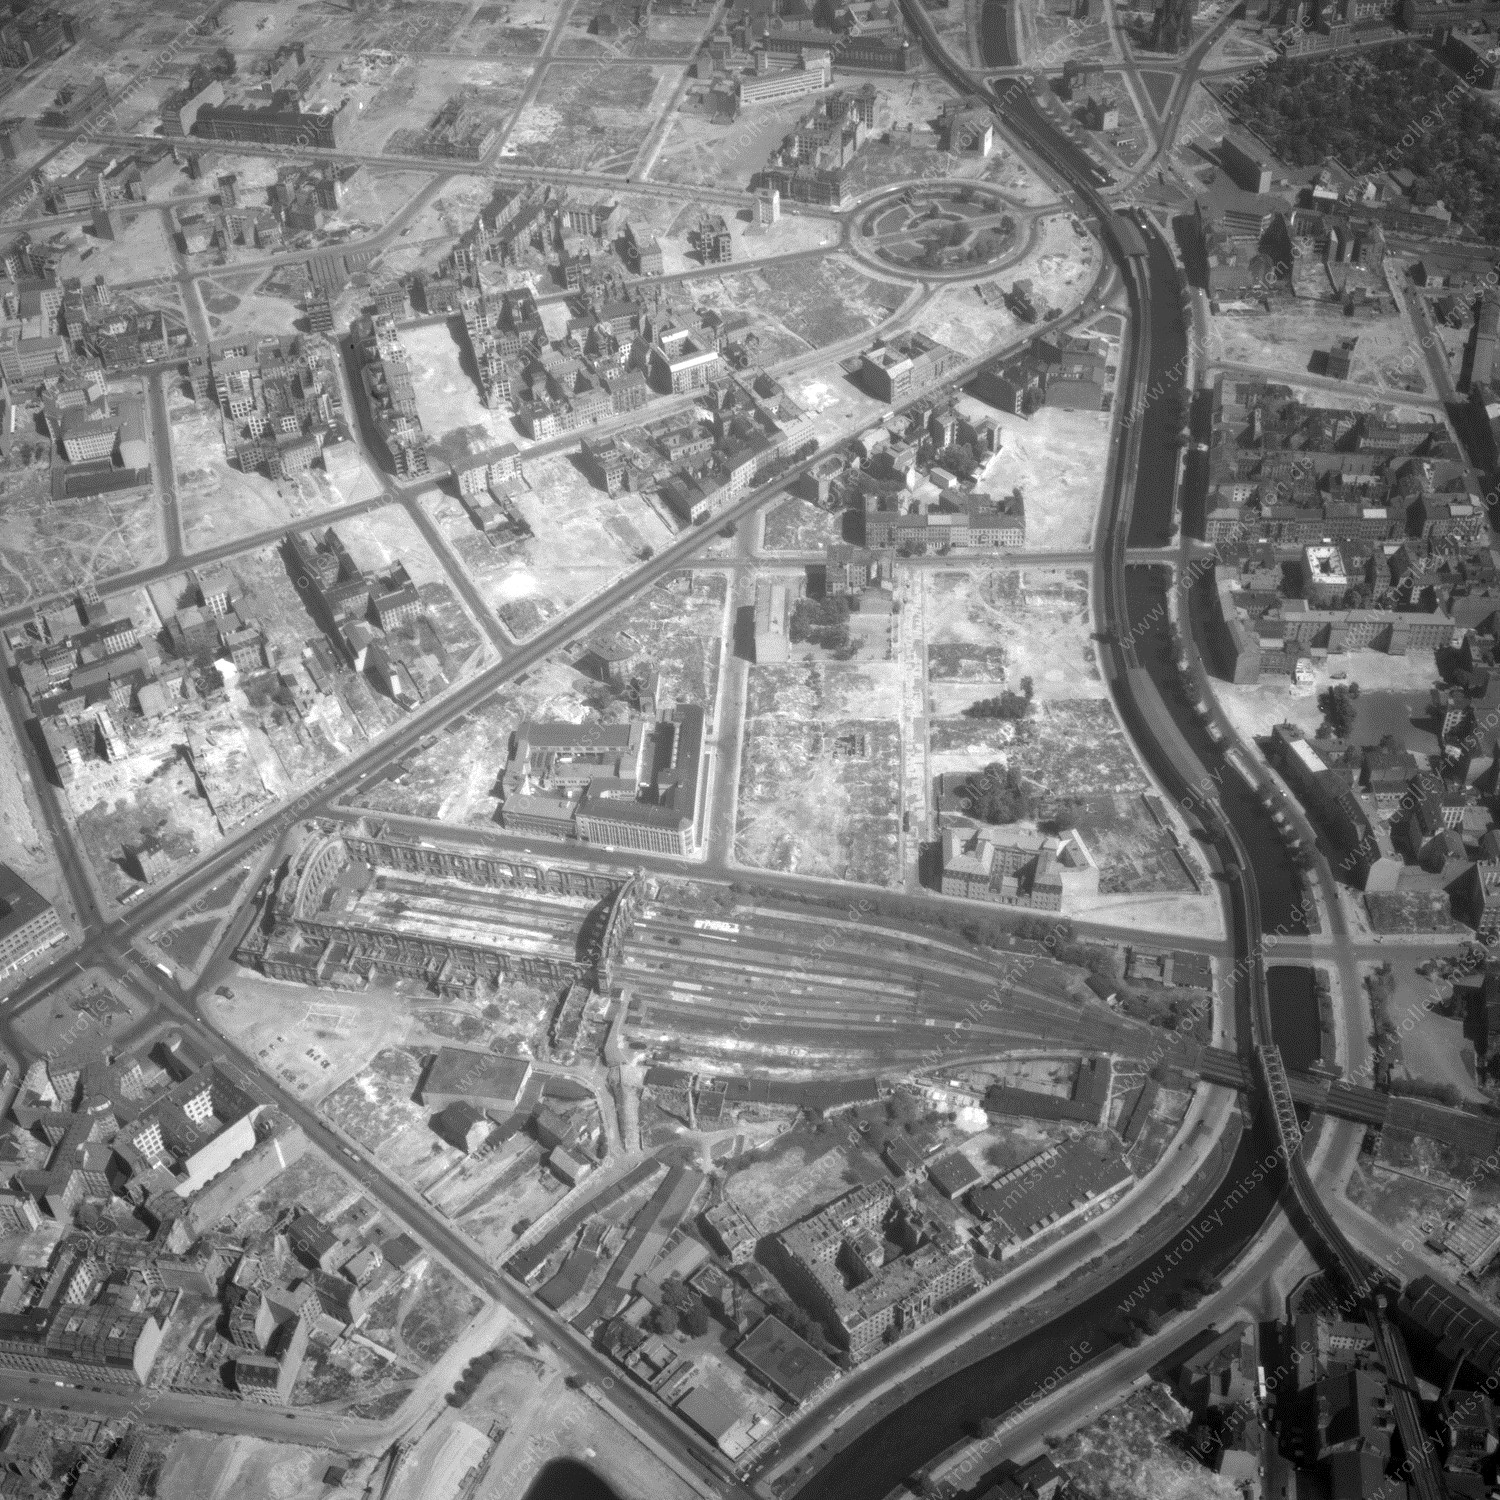 Alte Fotos und Luftbilder von Berlin - Luftbildaufnahme Nr. 07 - Historische Luftaufnahmen von West-Berlin aus dem Jahr 1954 - Flugstrecke India